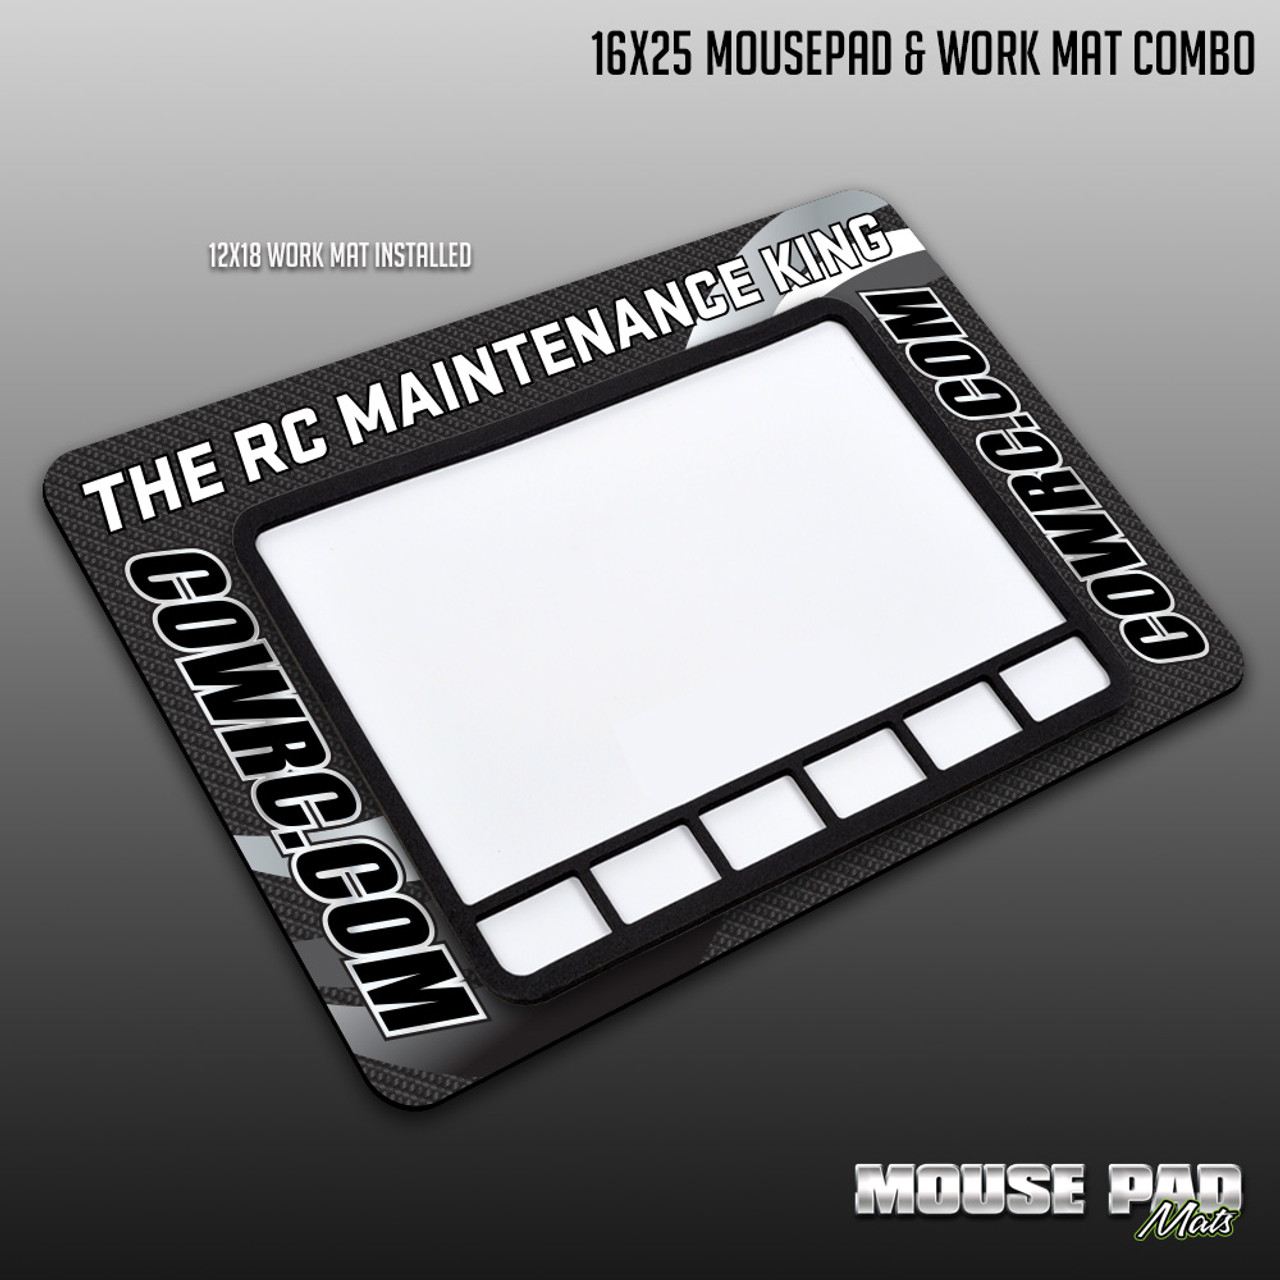 16" x 25" Mousepad & Work Mat Combo